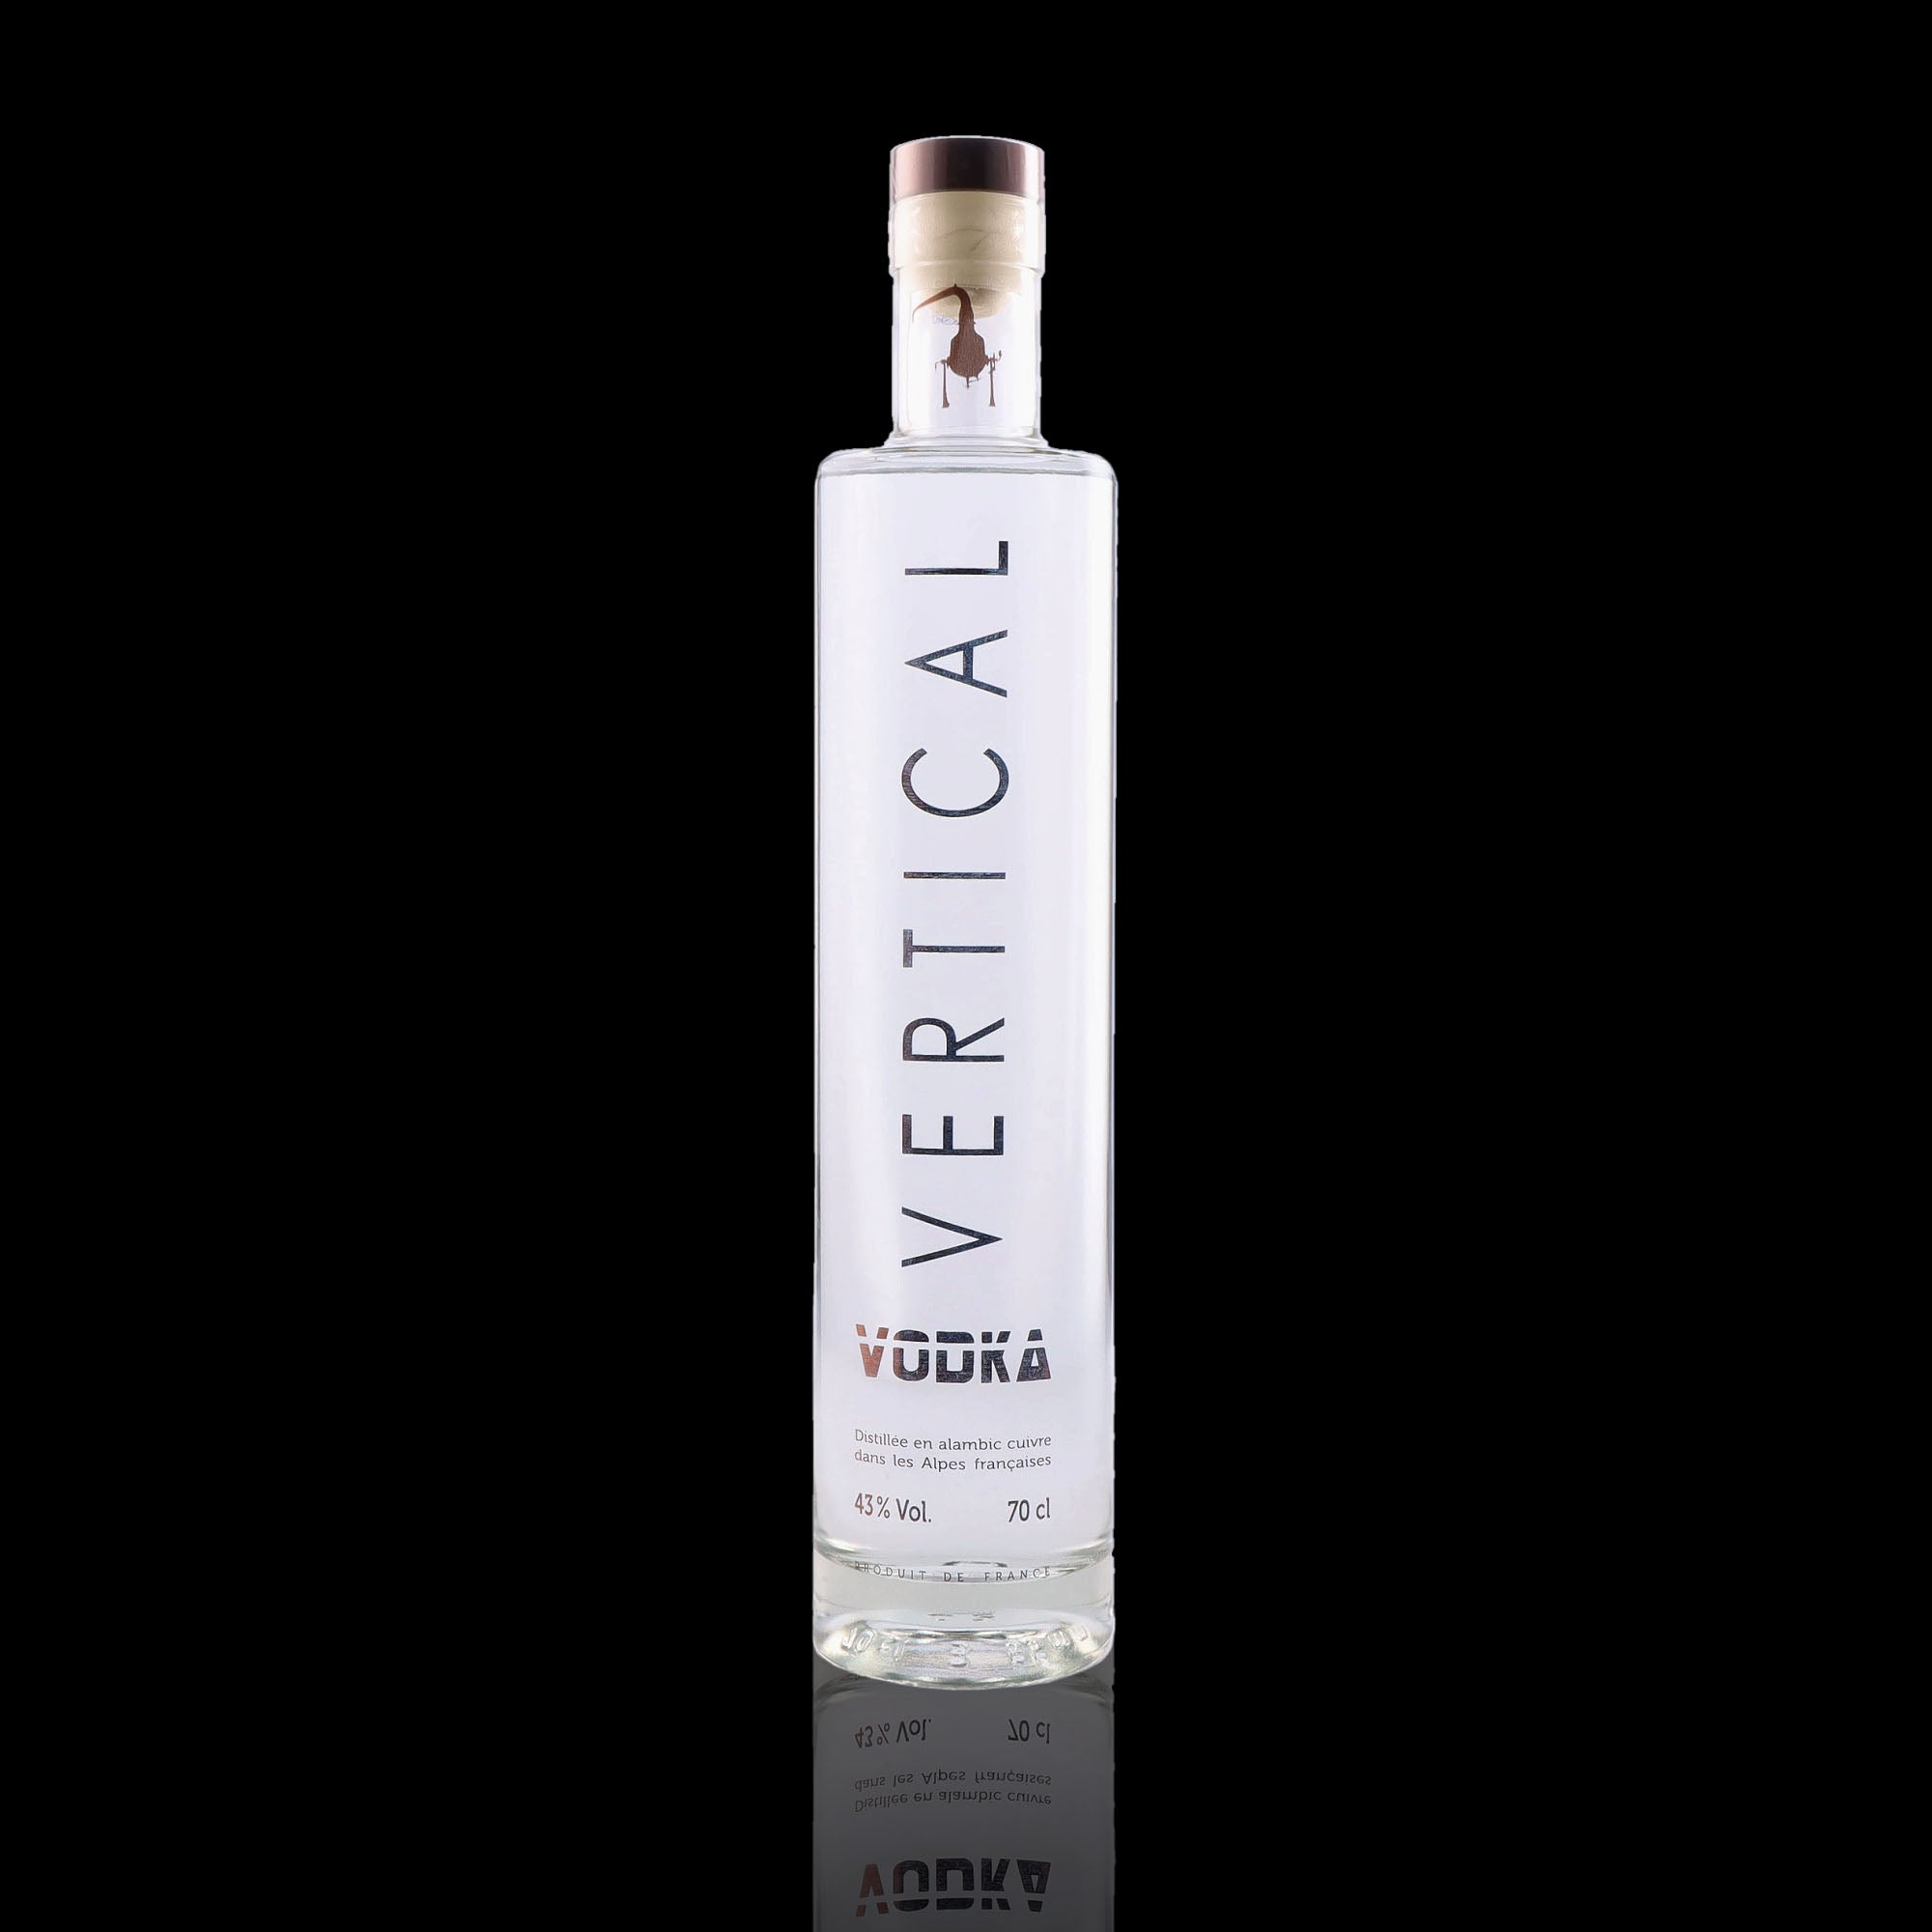 Une bouteille de Vodka, de la marque Vertical.